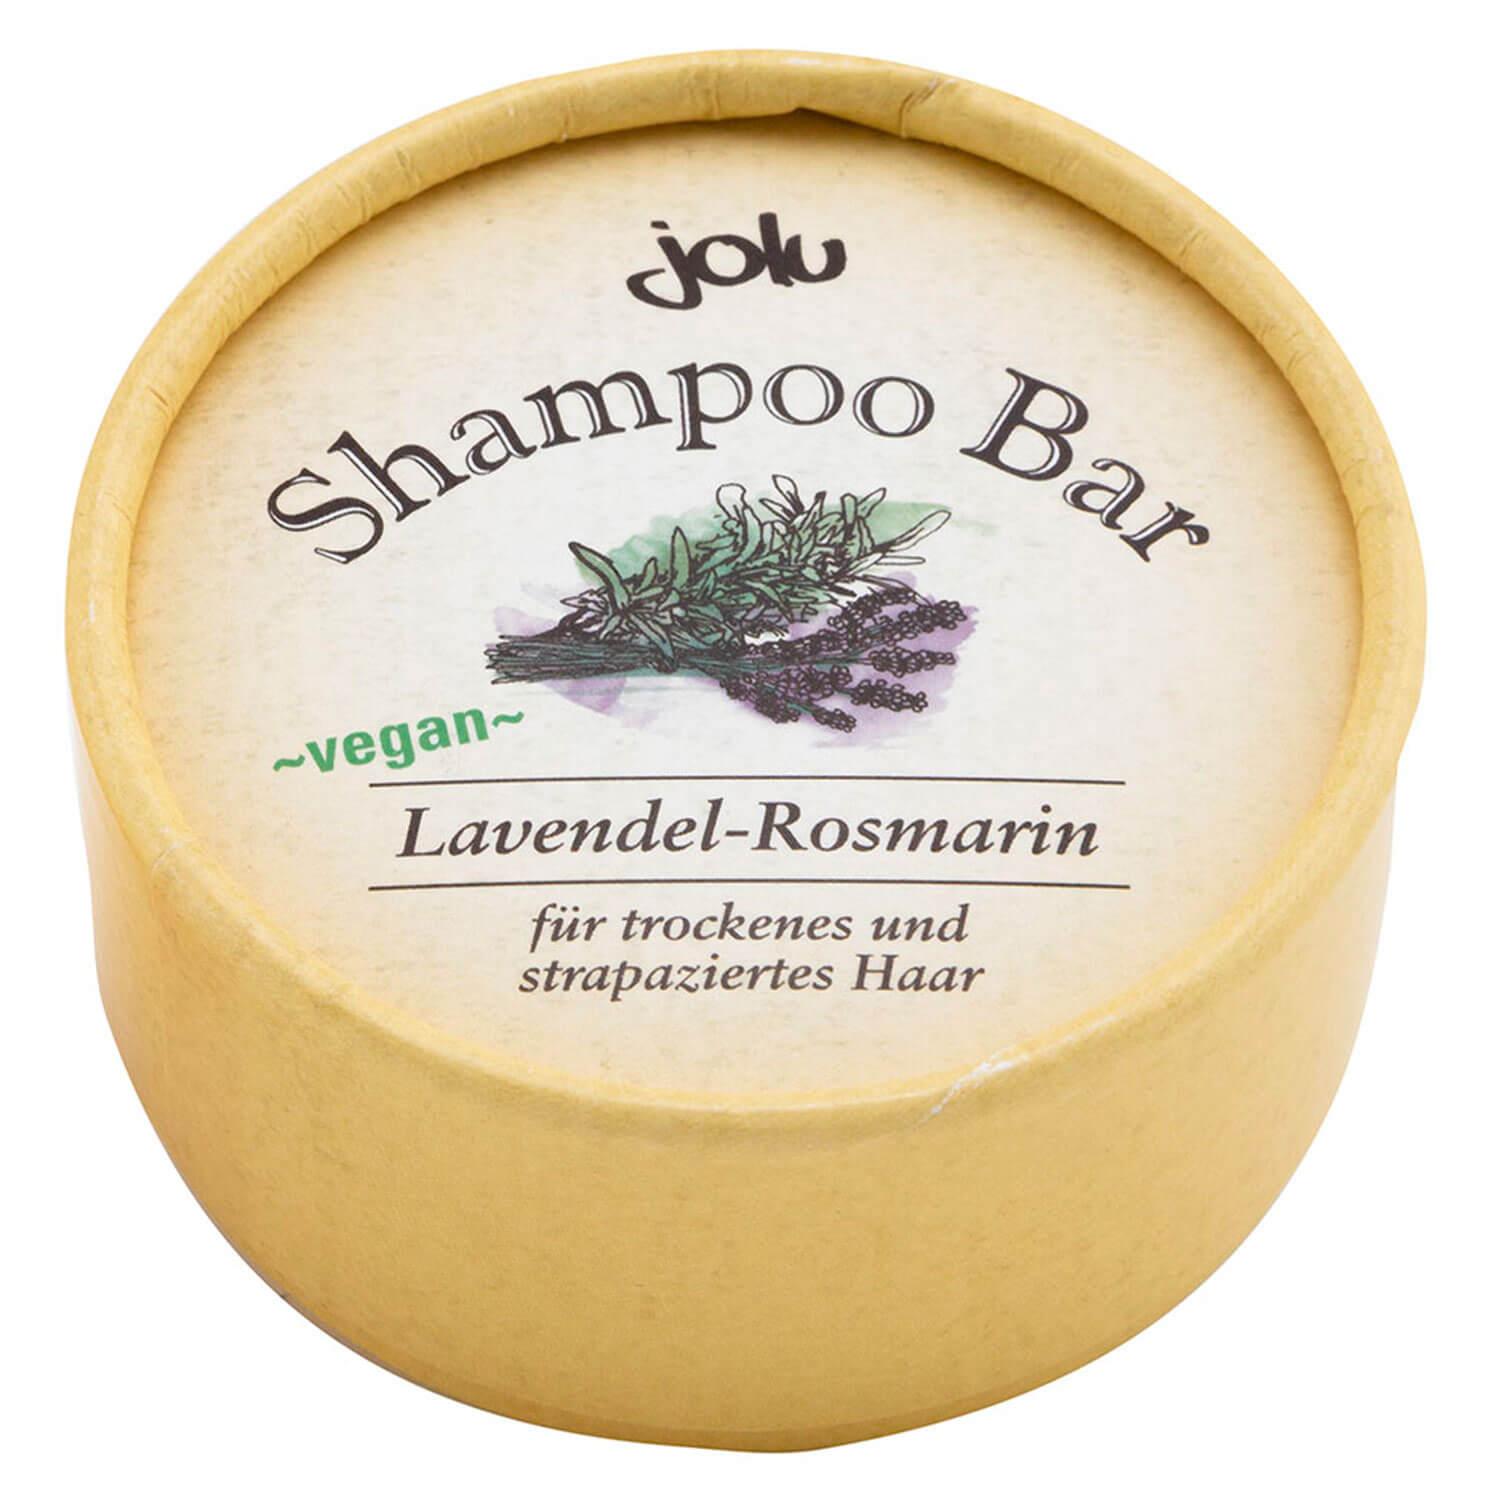 jolu - Shampoo Bar Lavender Rosemary